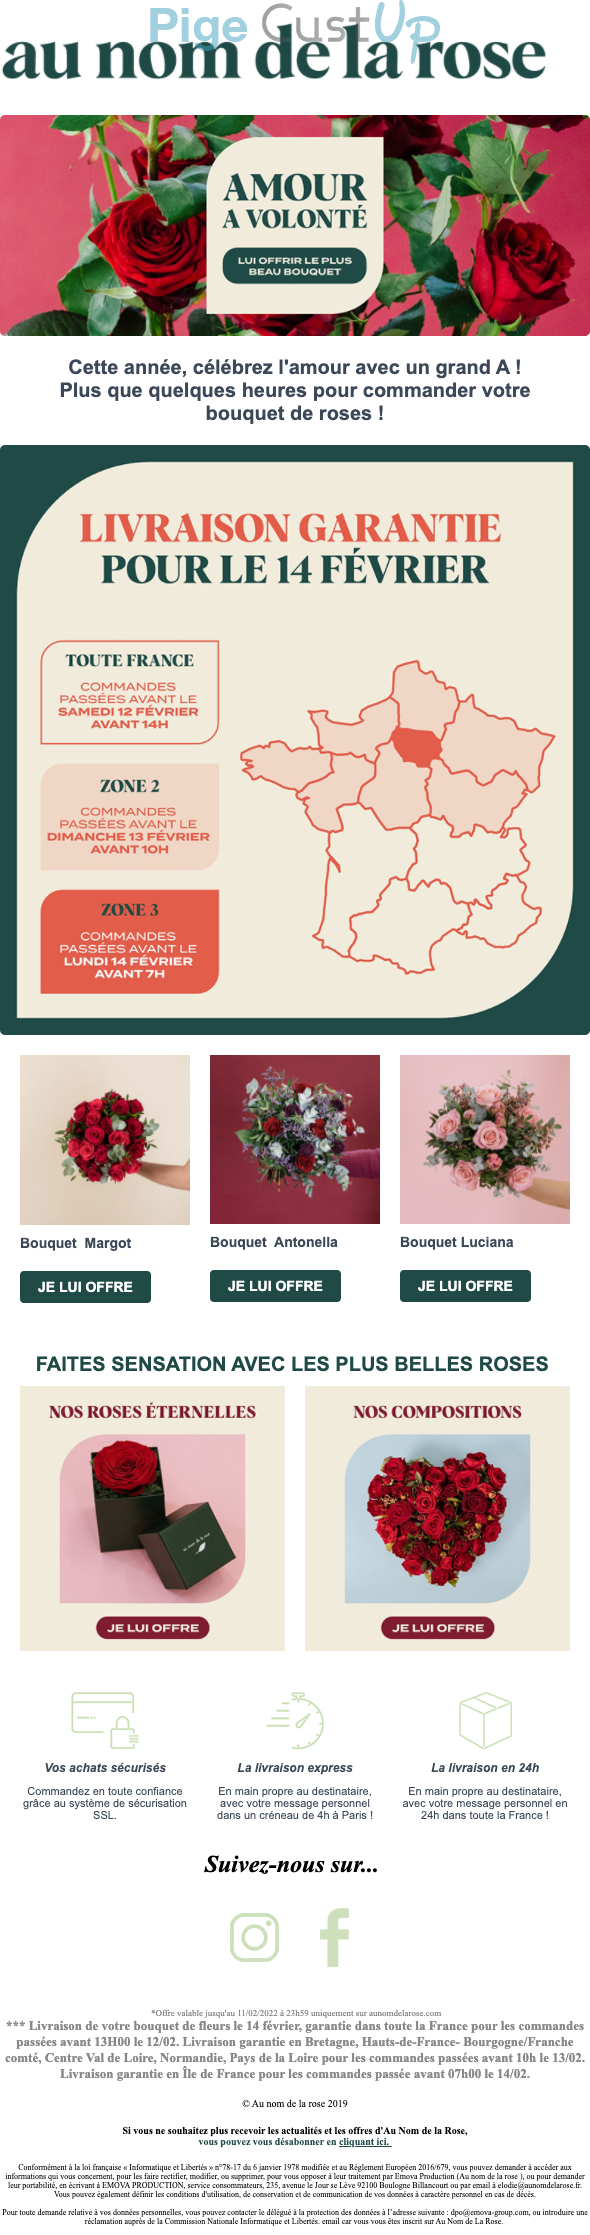 Exemple de Type de media  e-mailing - Au nom de la rose - Marketing relationnel - Calendaire (Noël, St valentin, Vœux, …) - Marketing Acquisition - Derniers jours